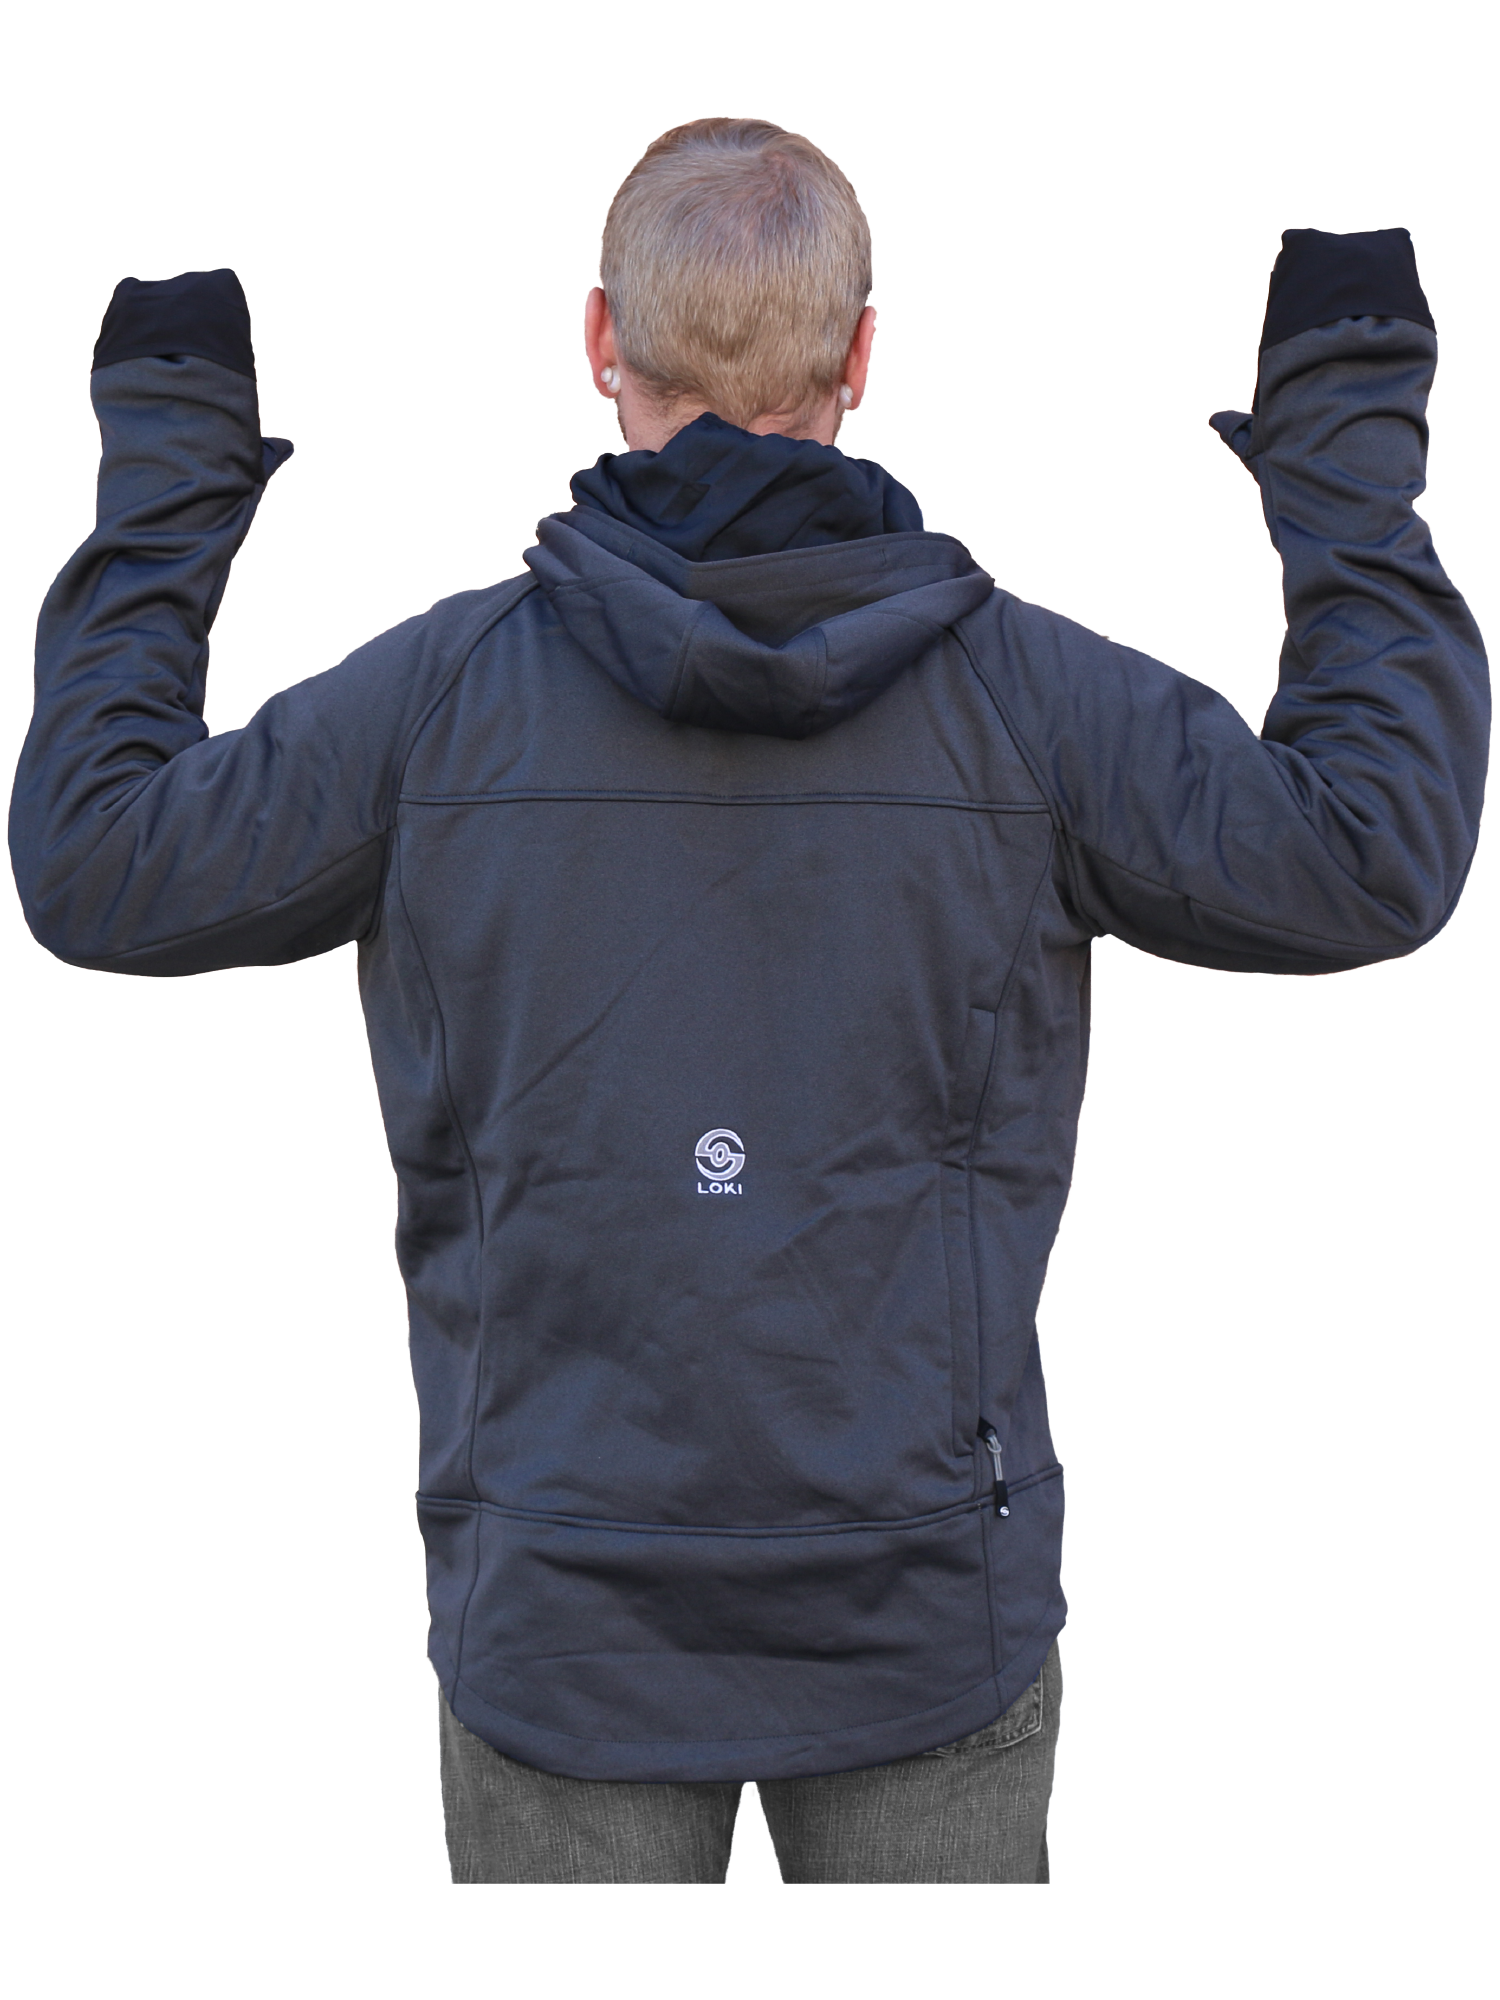 Men's Stretch Jacket - Black Back